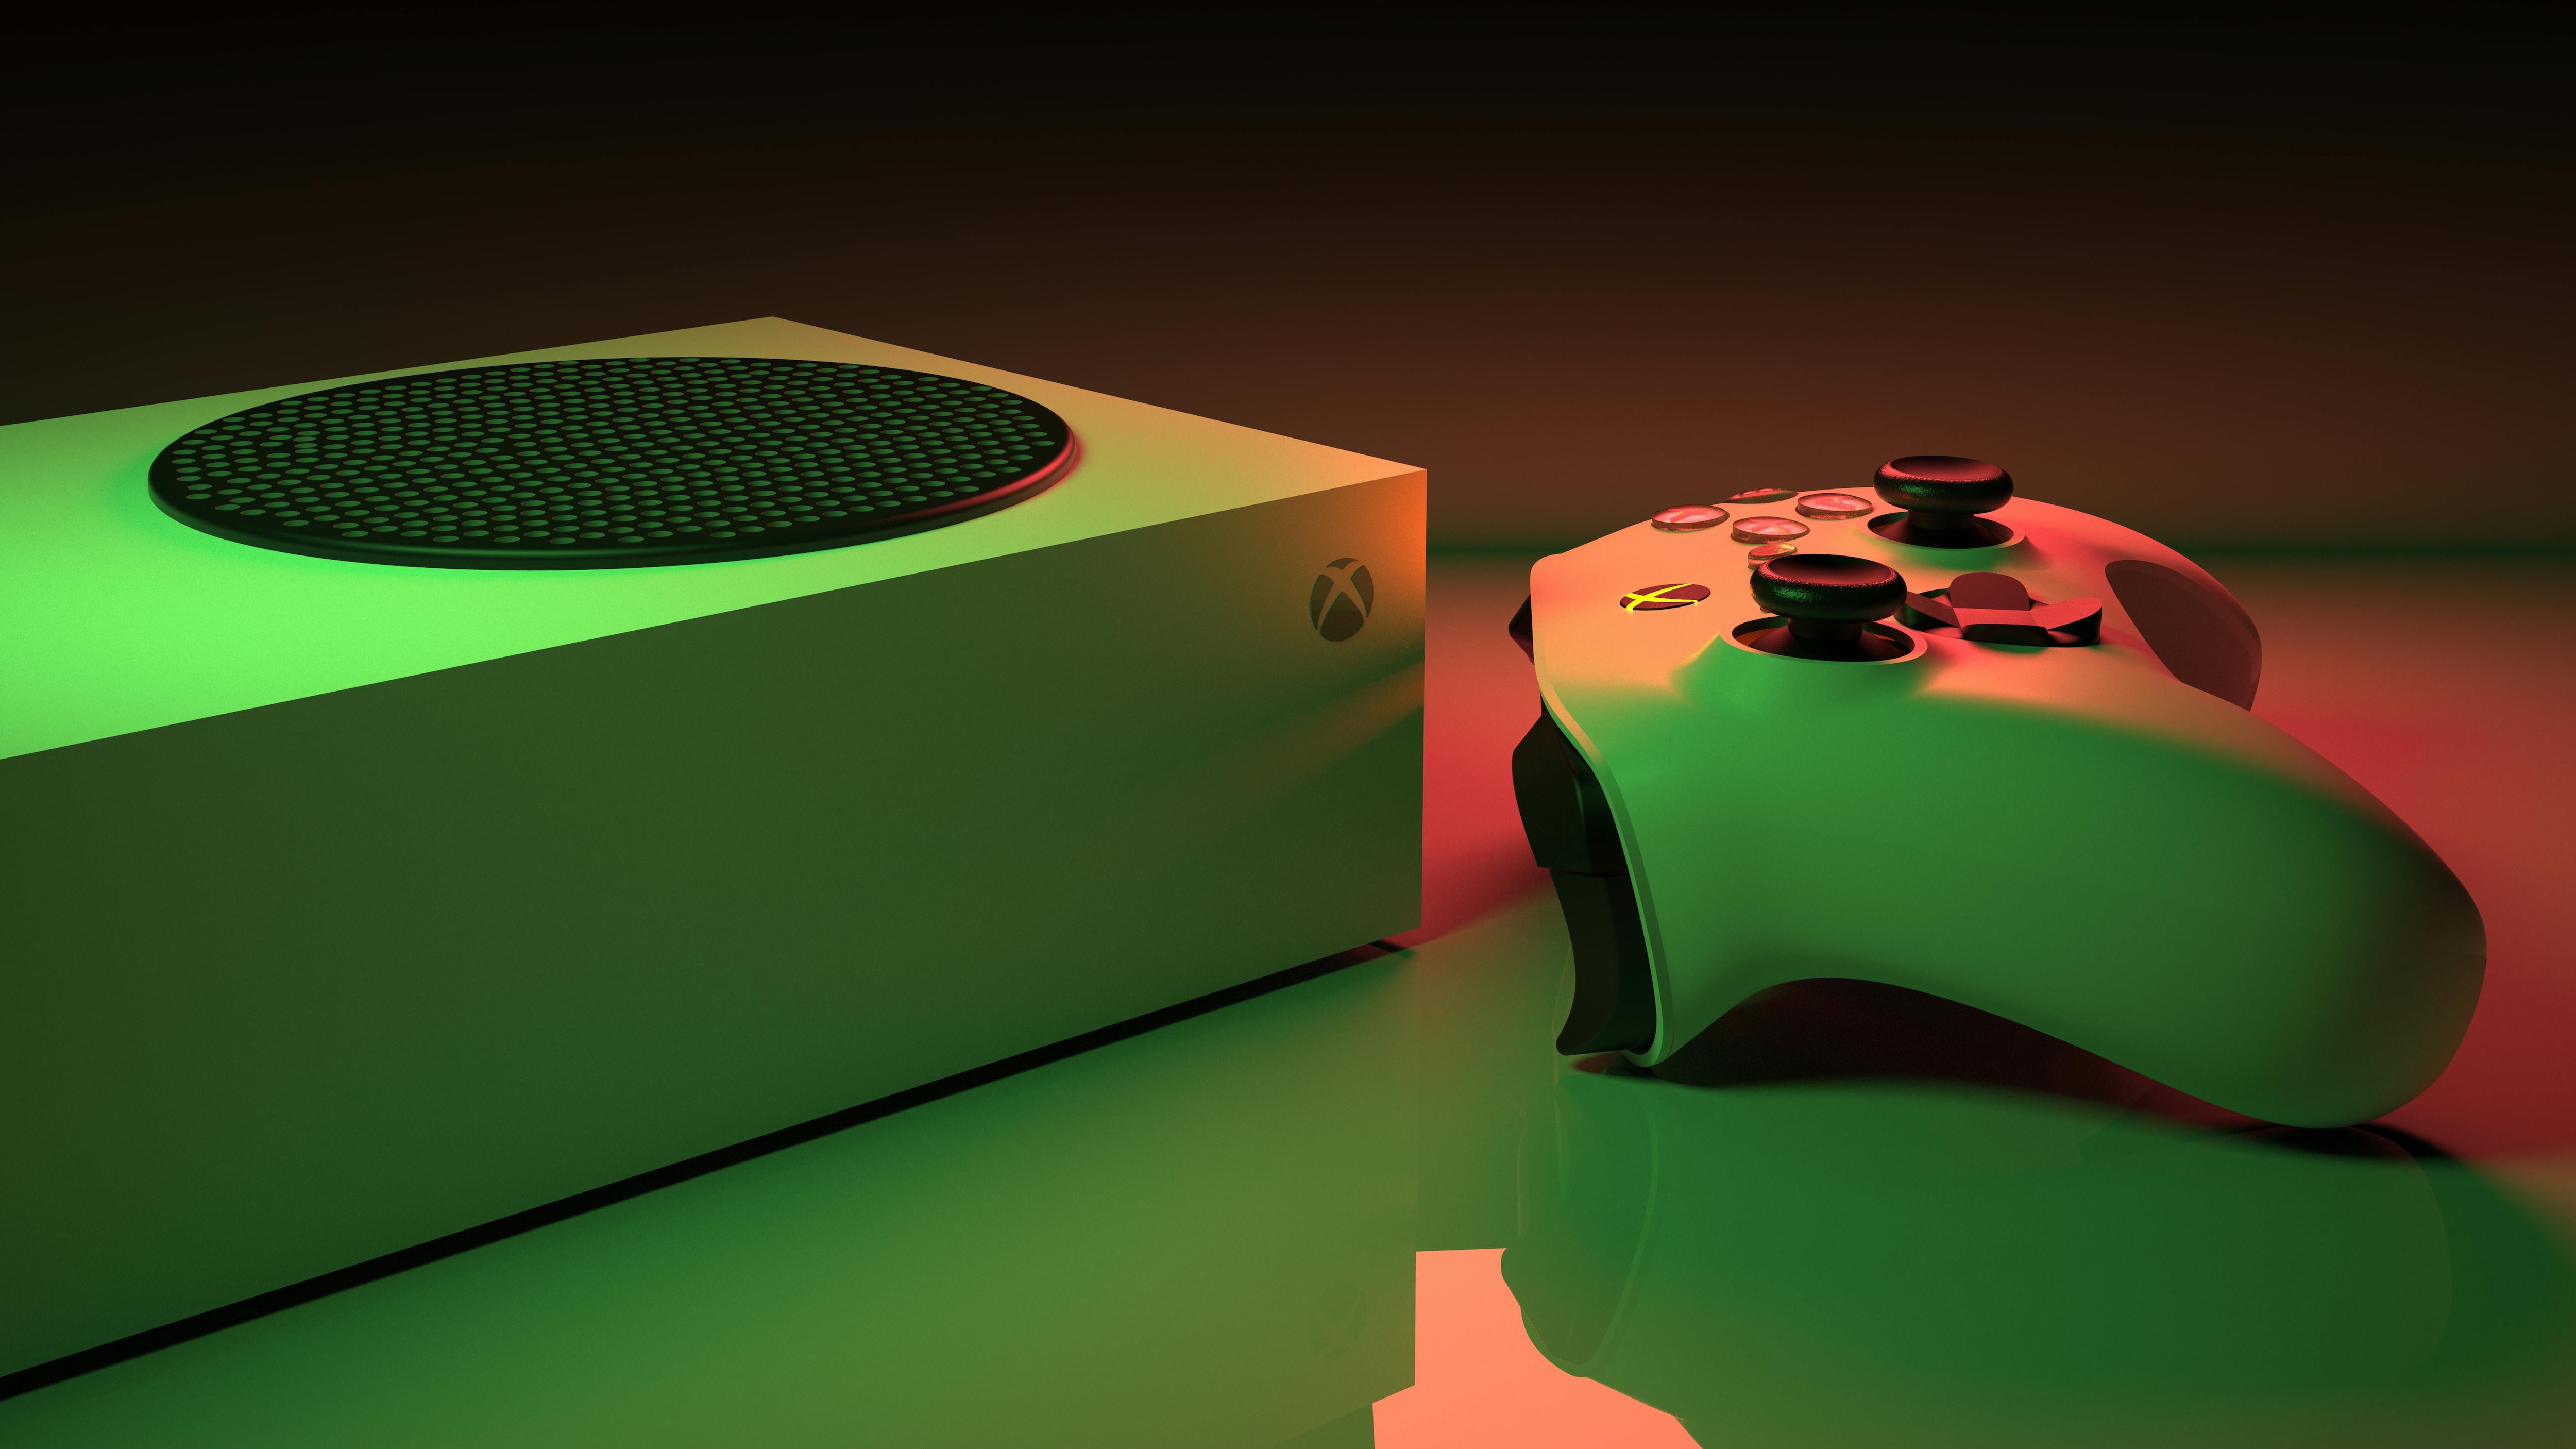 Xbox Live sufrió una caída el 2 de julio, afectando el inicio de sesión y juegos. Downdetector reportó miles de quejas.